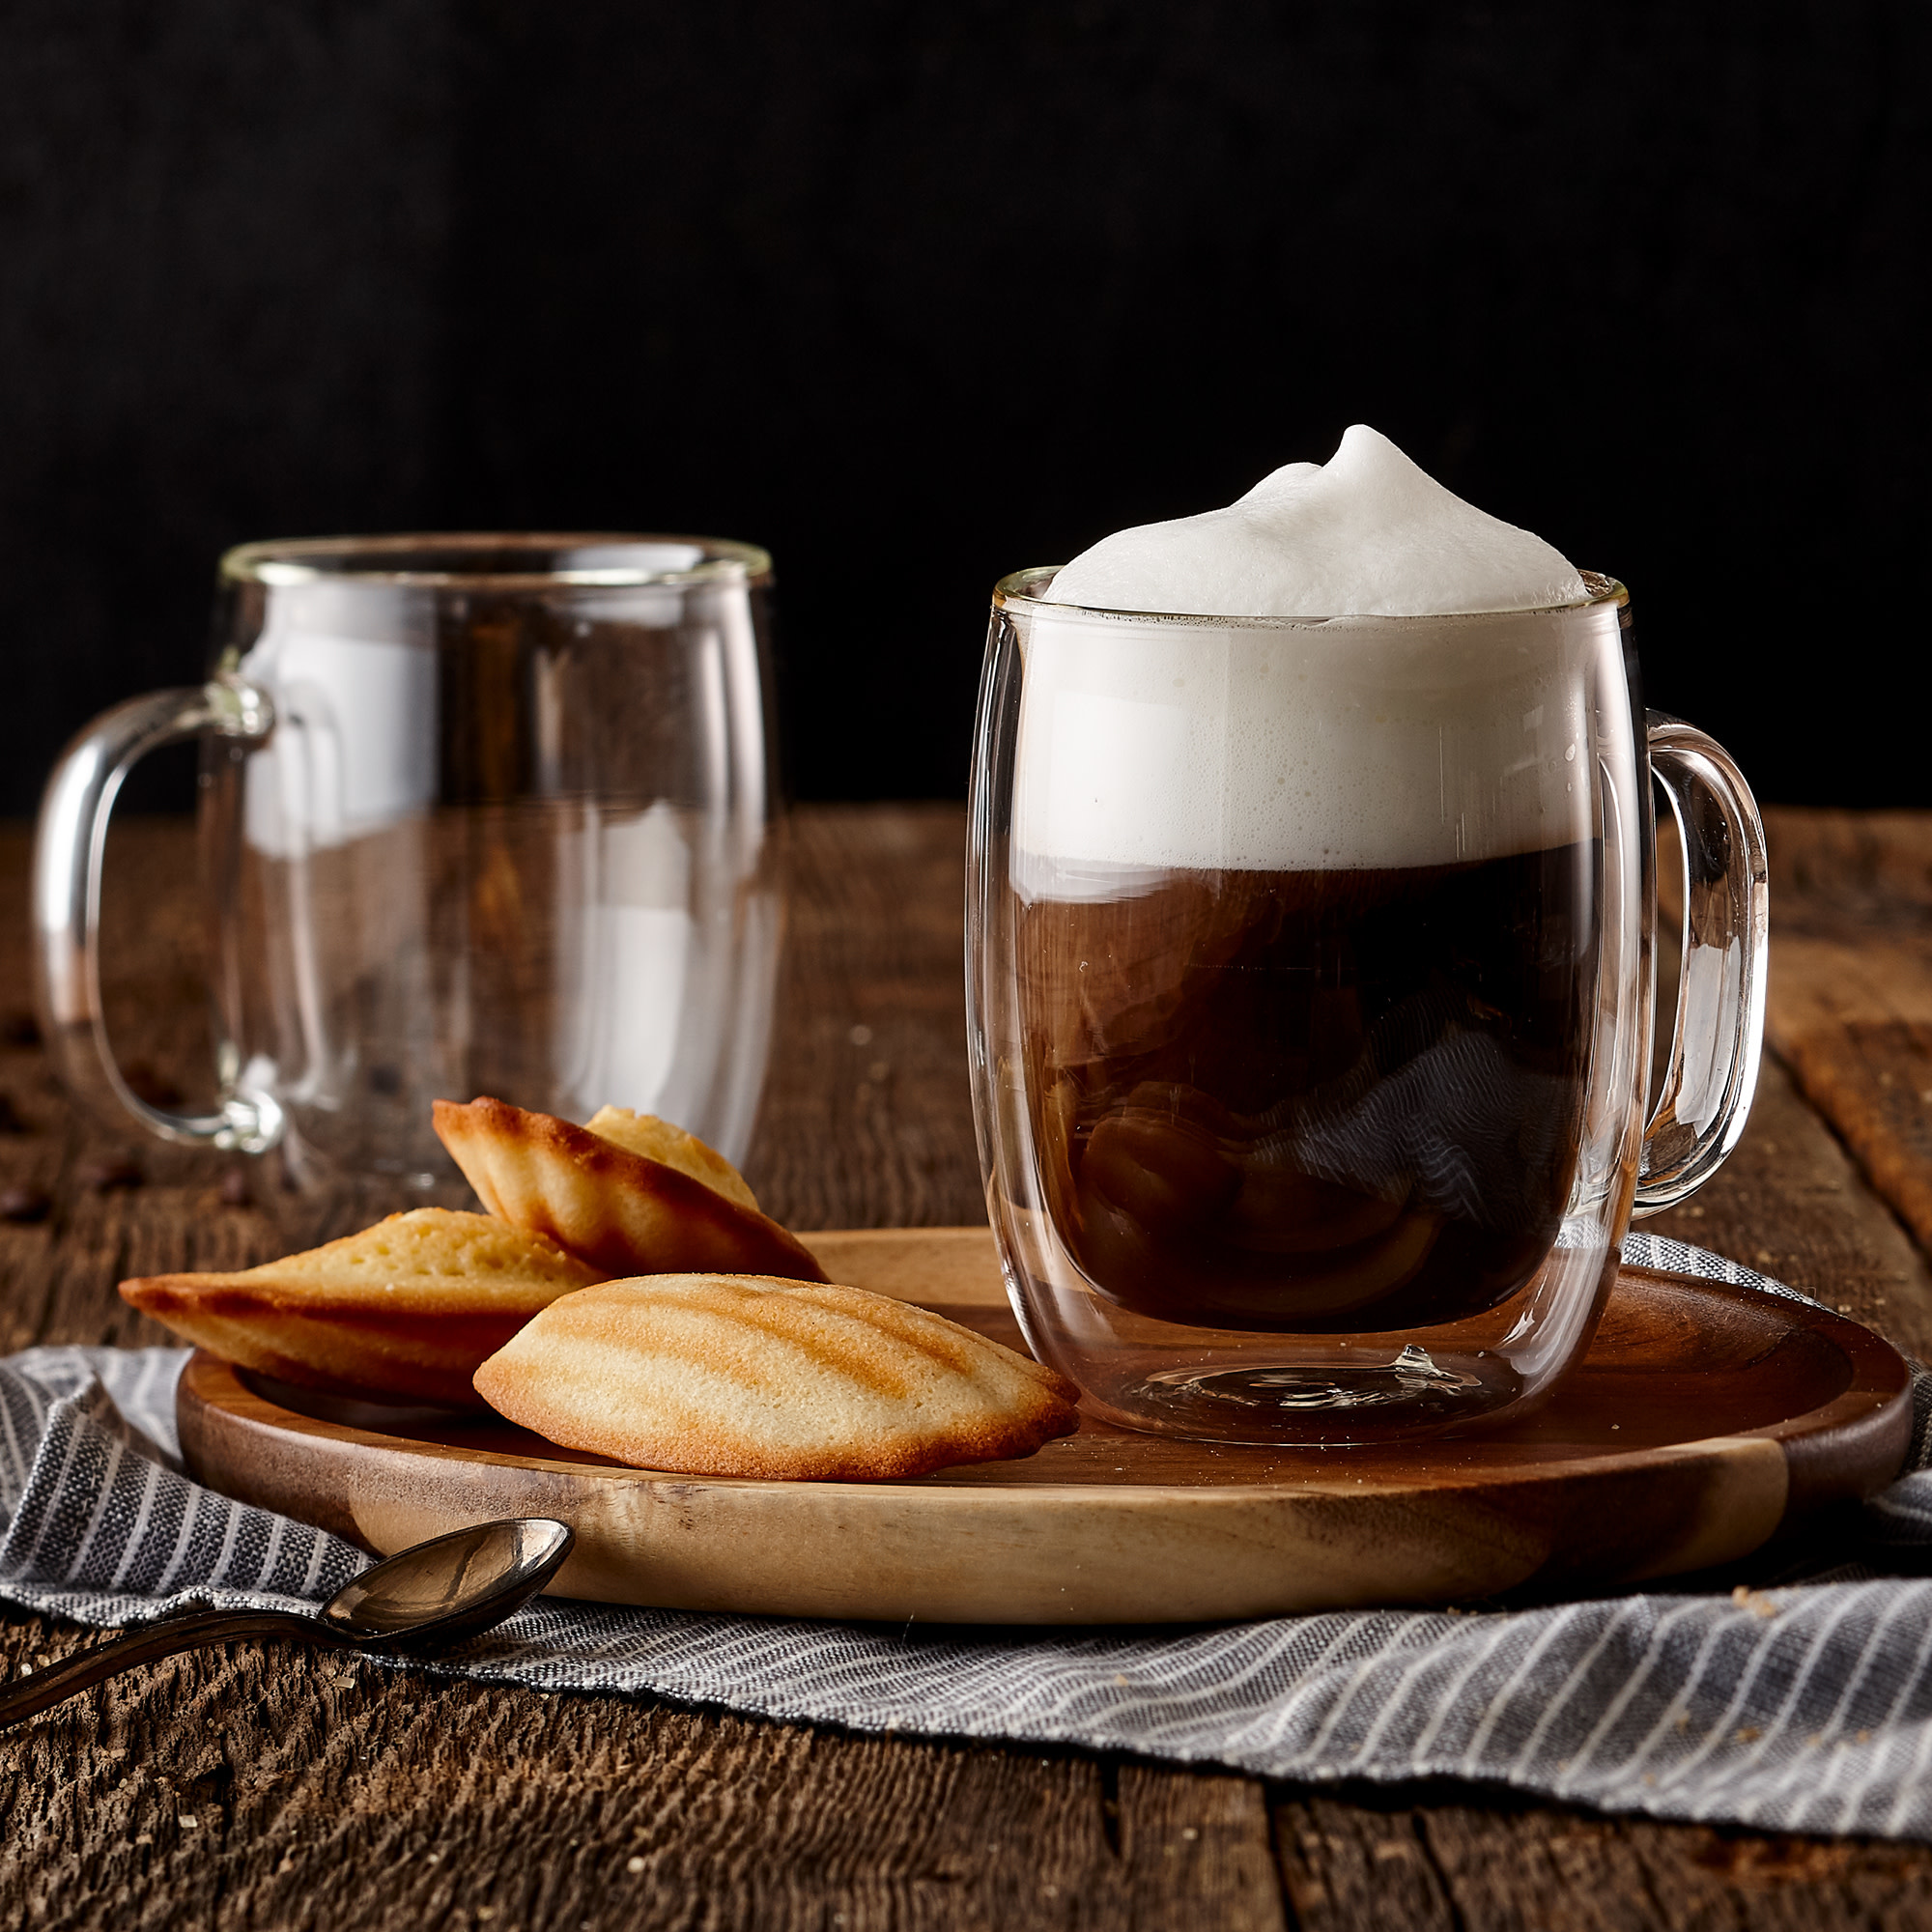 Tasse à café double paroi Macchiato 380 ml, lot de 2 de Barista+ - Ares  Accessoires de cuisine